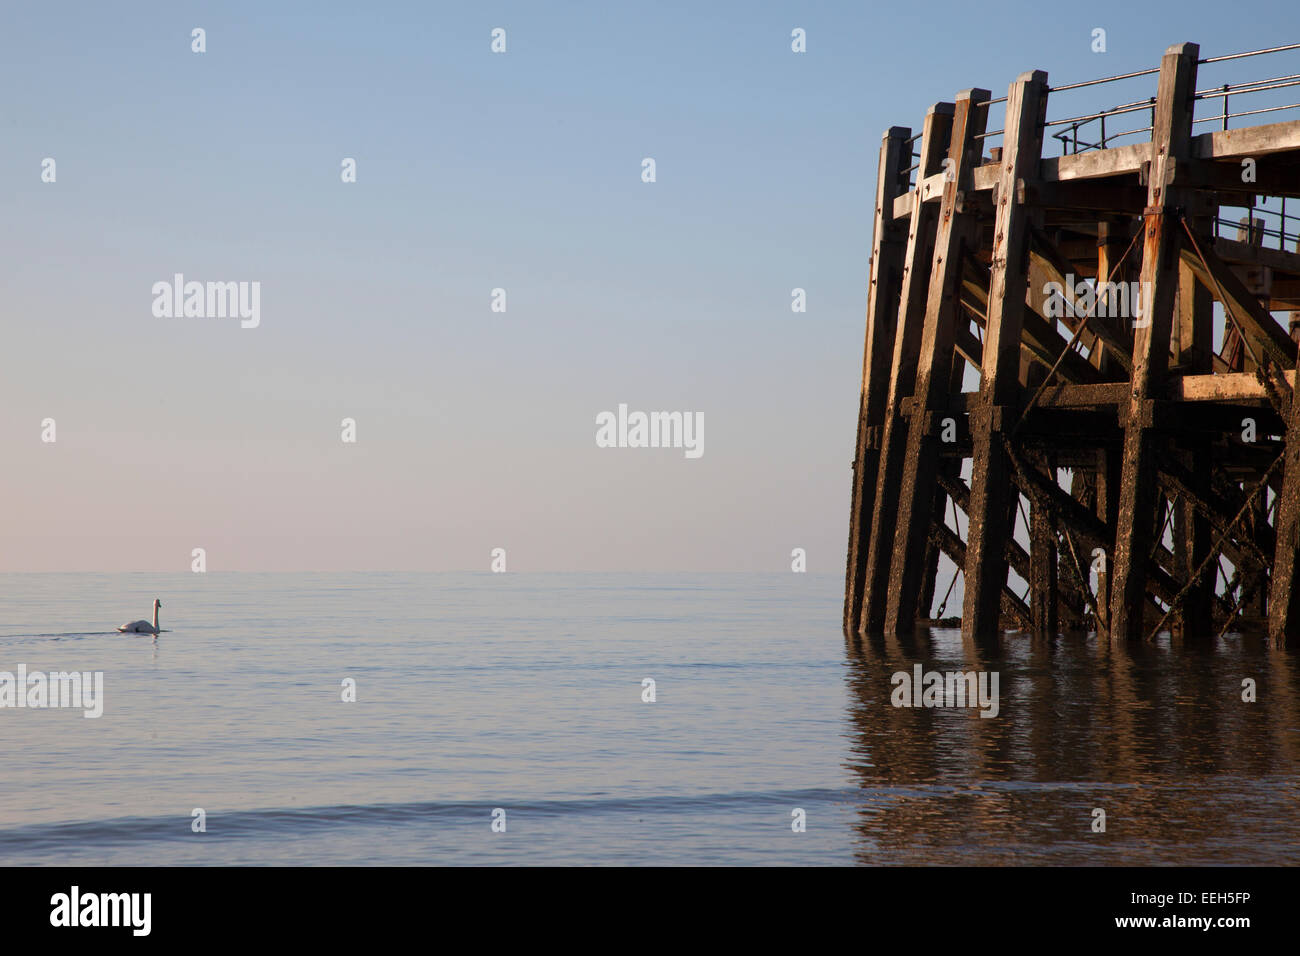 Dettaglio di Worthing pier head con cigno nuotare sul mare calmo. Foto Stock